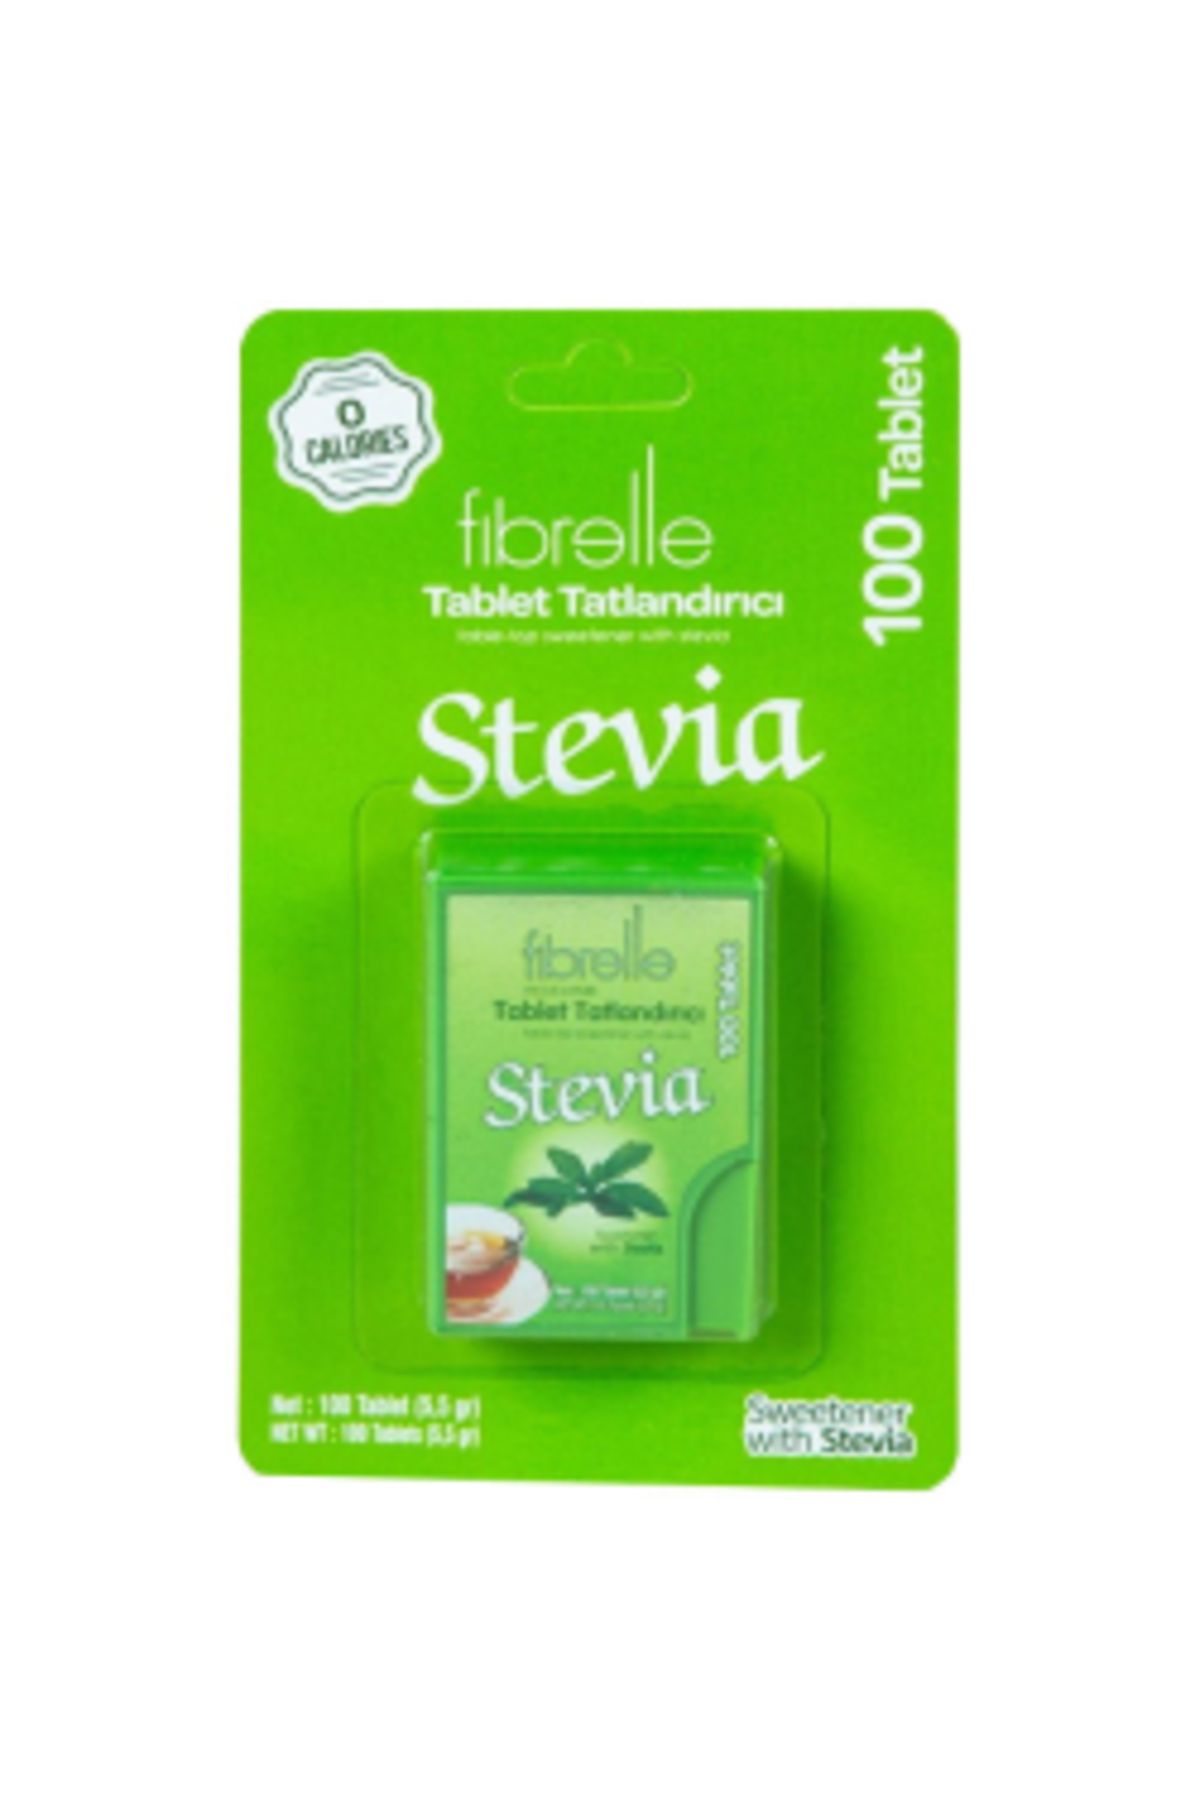 Fibrelle Stevia Tatlandırıcı 100 Tablet ( 1 ADET )